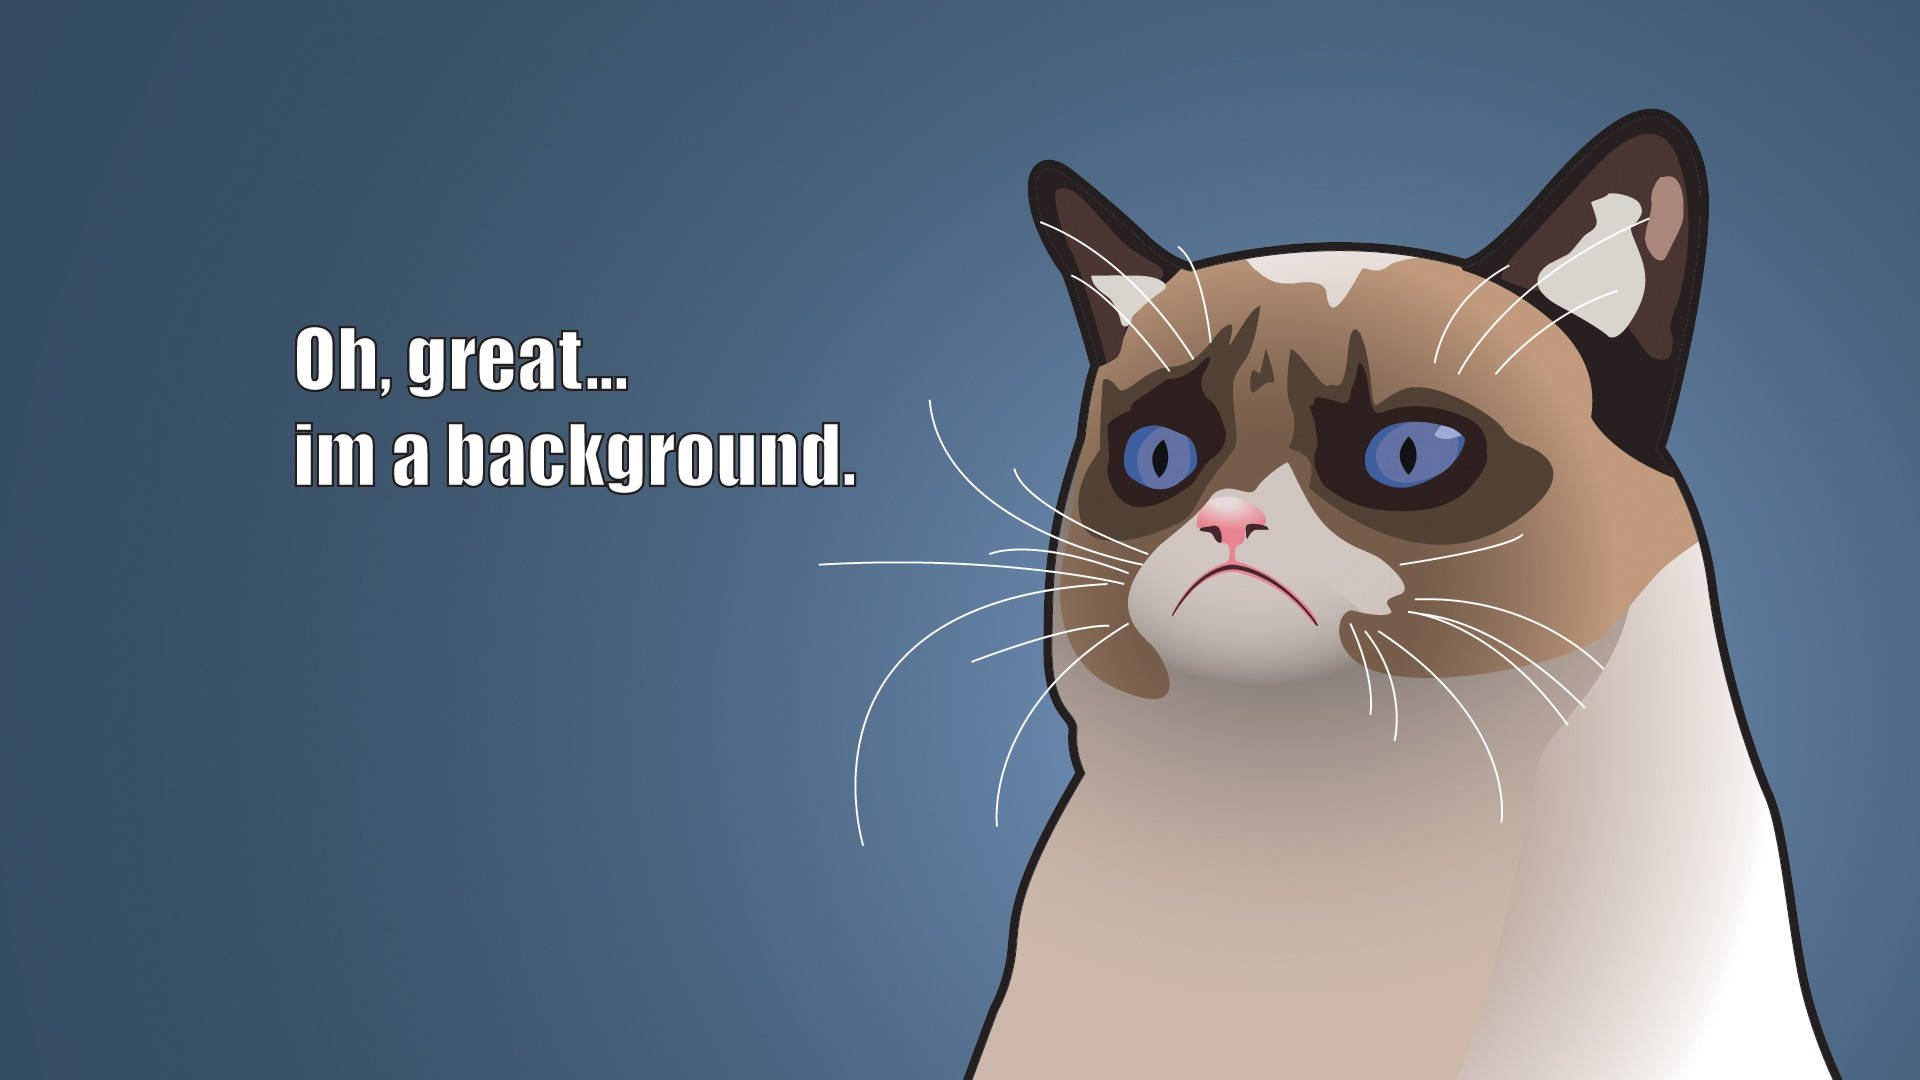 Free Cat Meme Wallpaper Downloads, [100+] Cat Meme Wallpapers for FREE |  